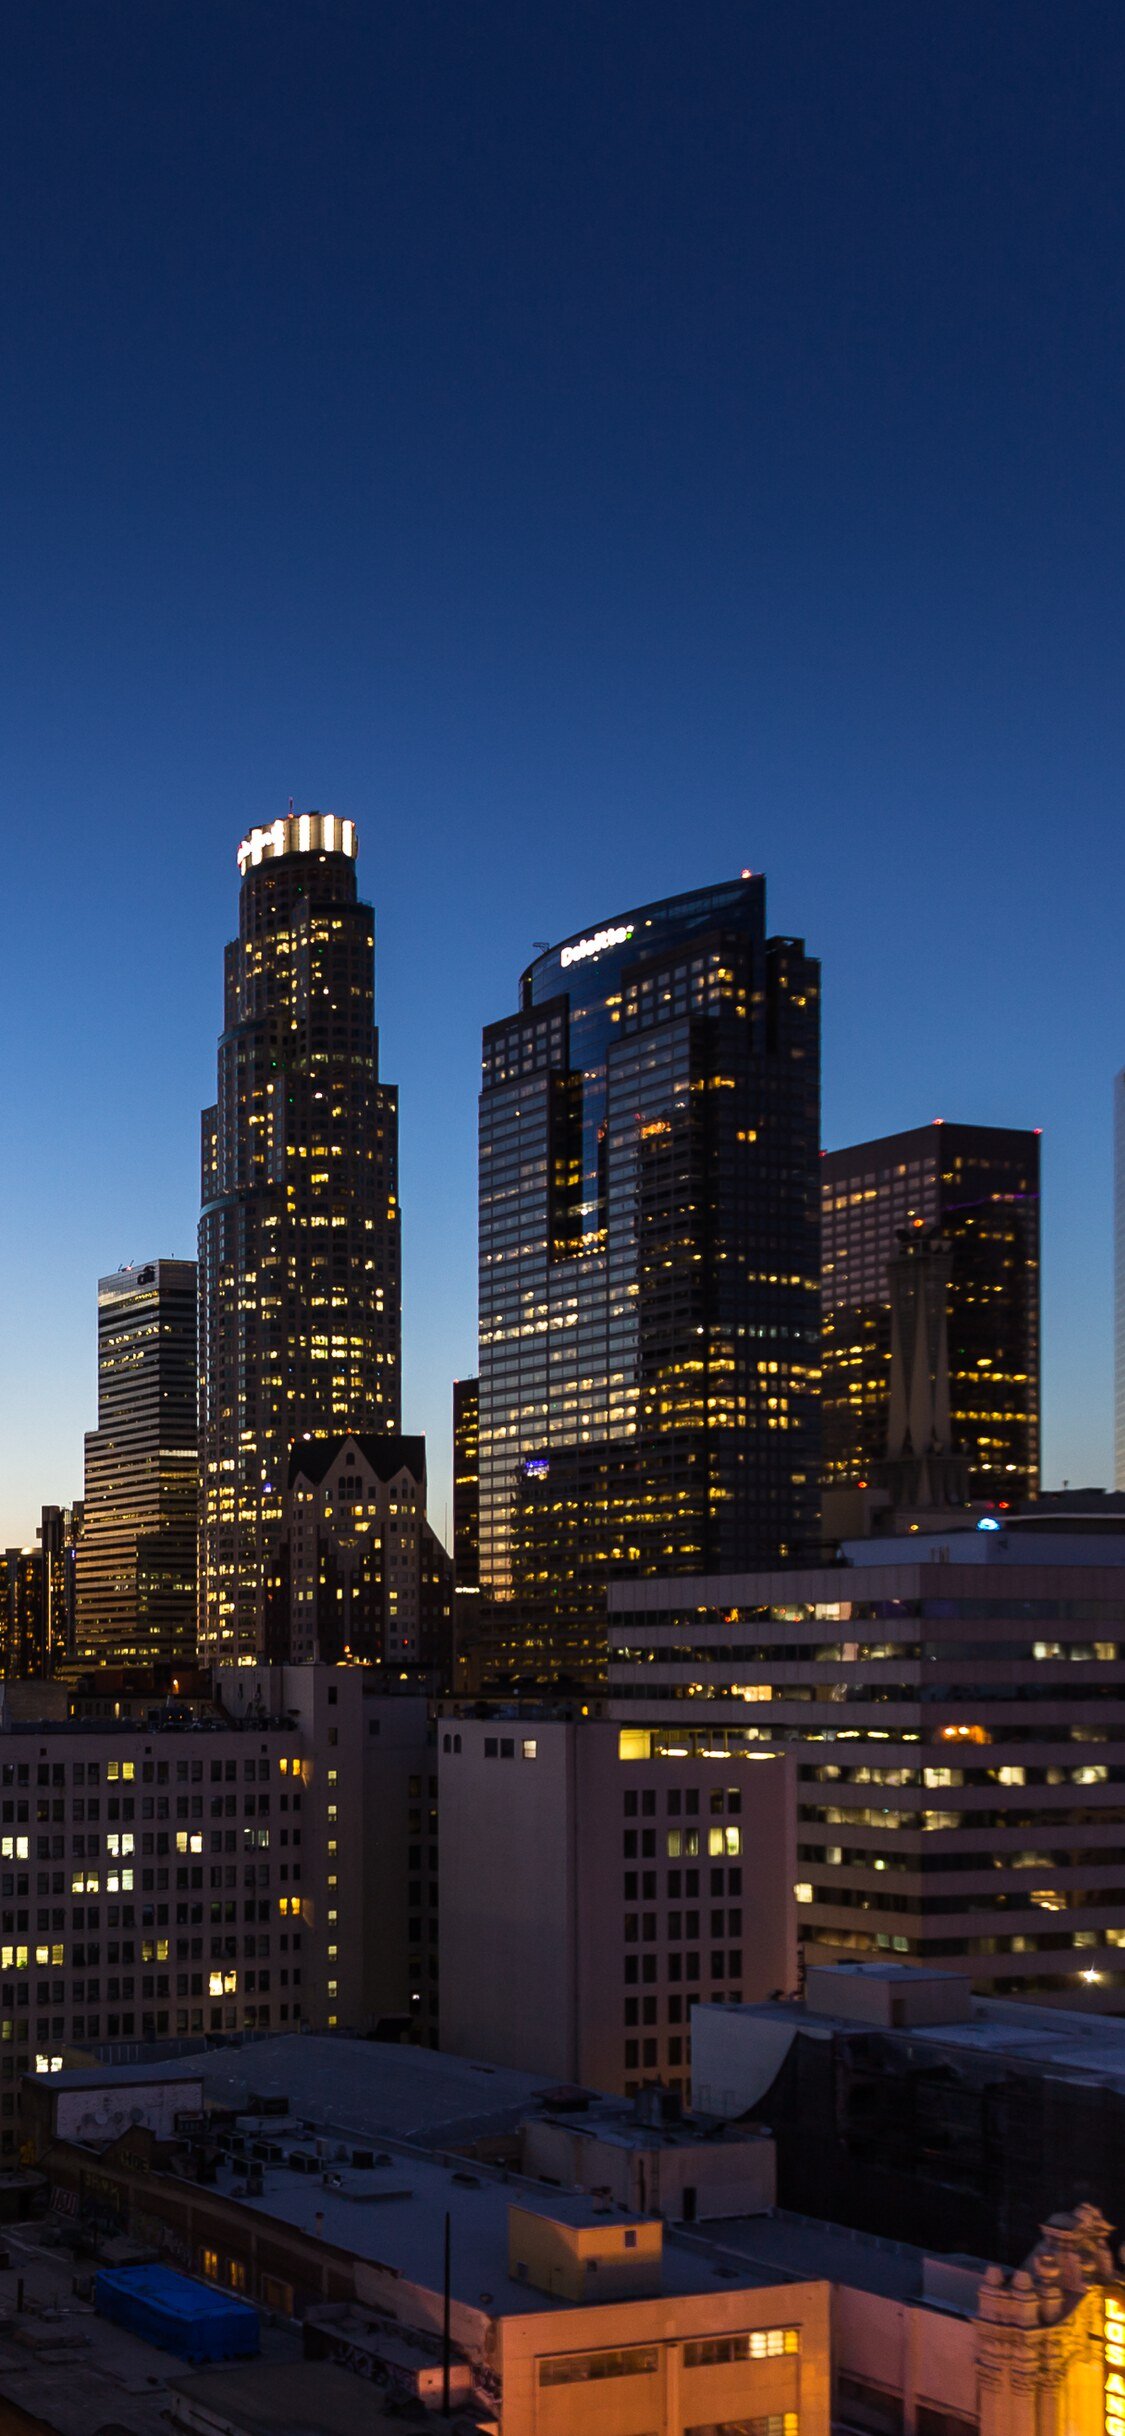 Los Angeles Skyline at night Wallpaper / Desktop Backgroun… | Flickr